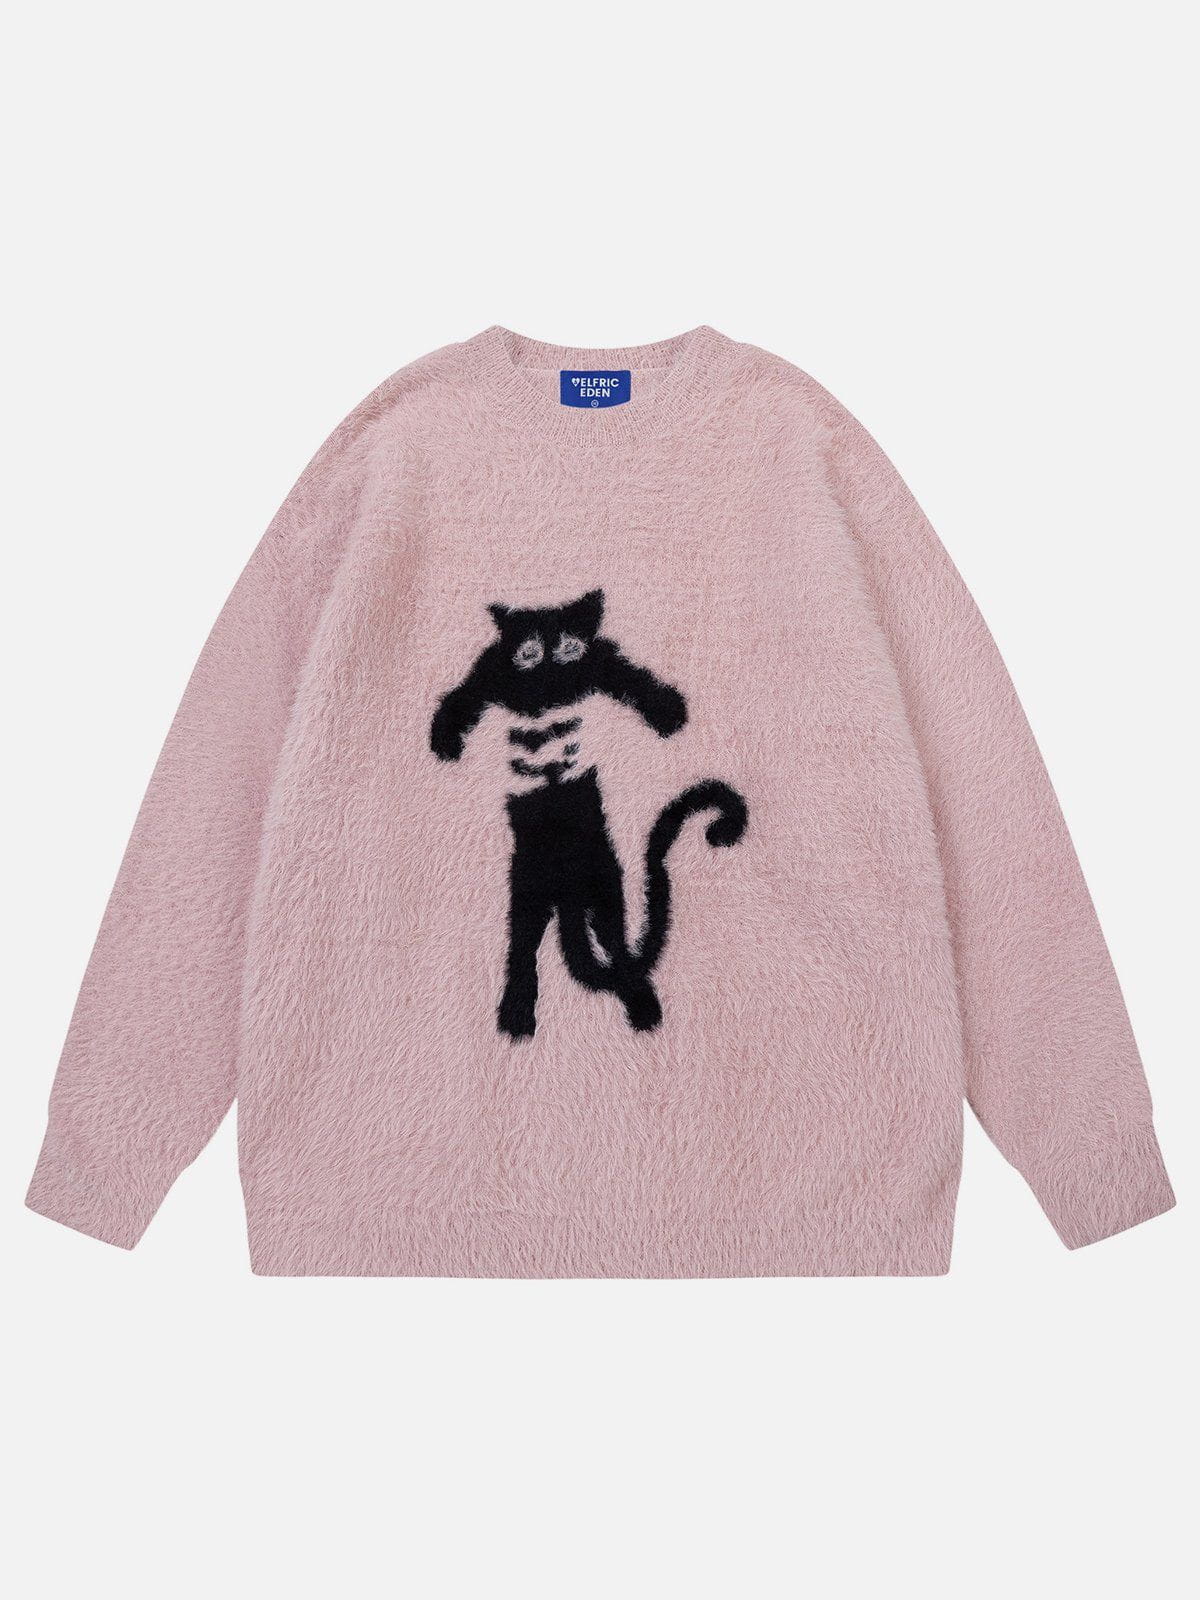 Aelfric Eden Cute Cat Sweater